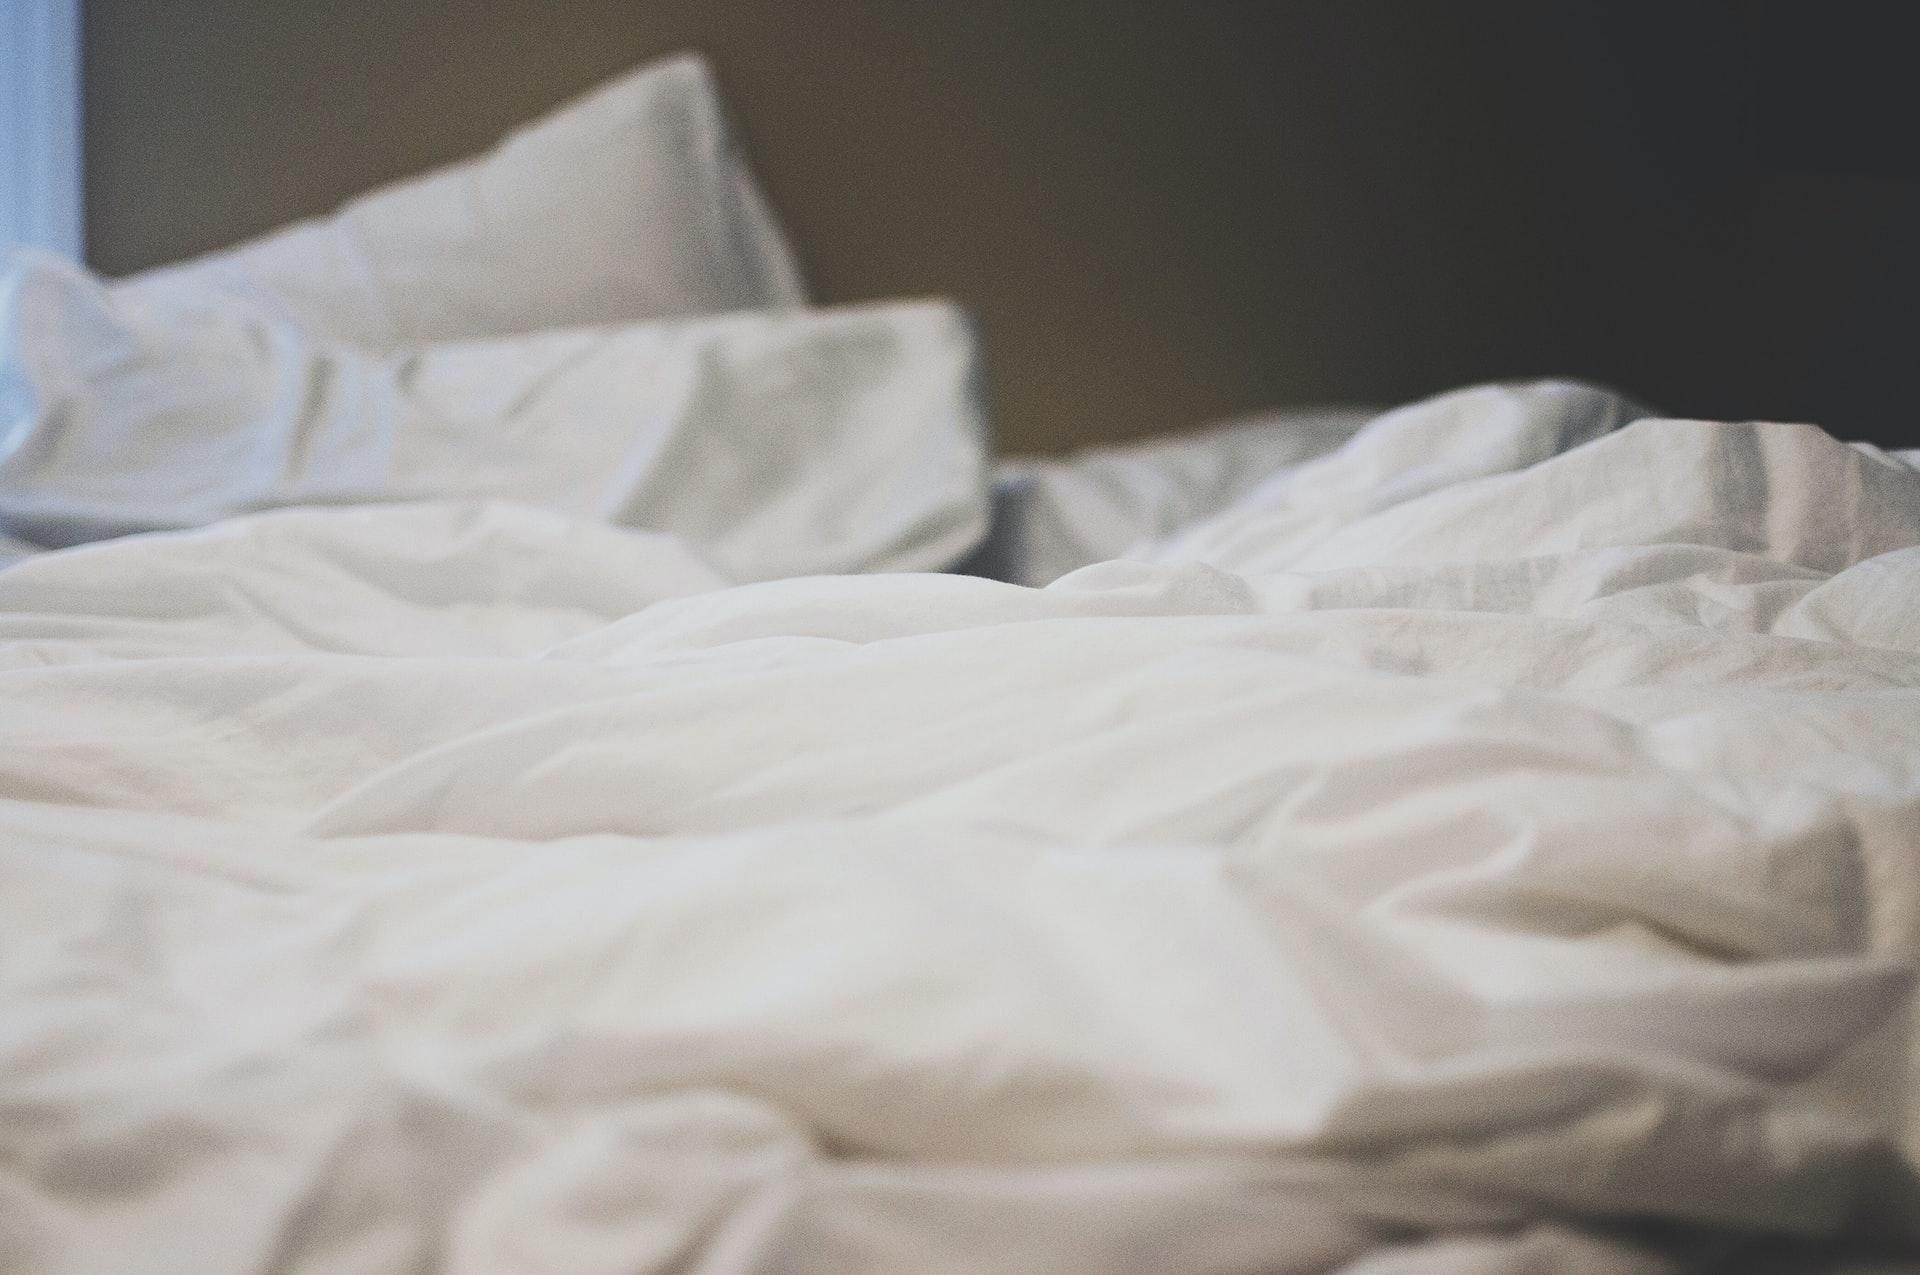 Вредно ли не застилать постель: интересное исследование Нацфонда сна США